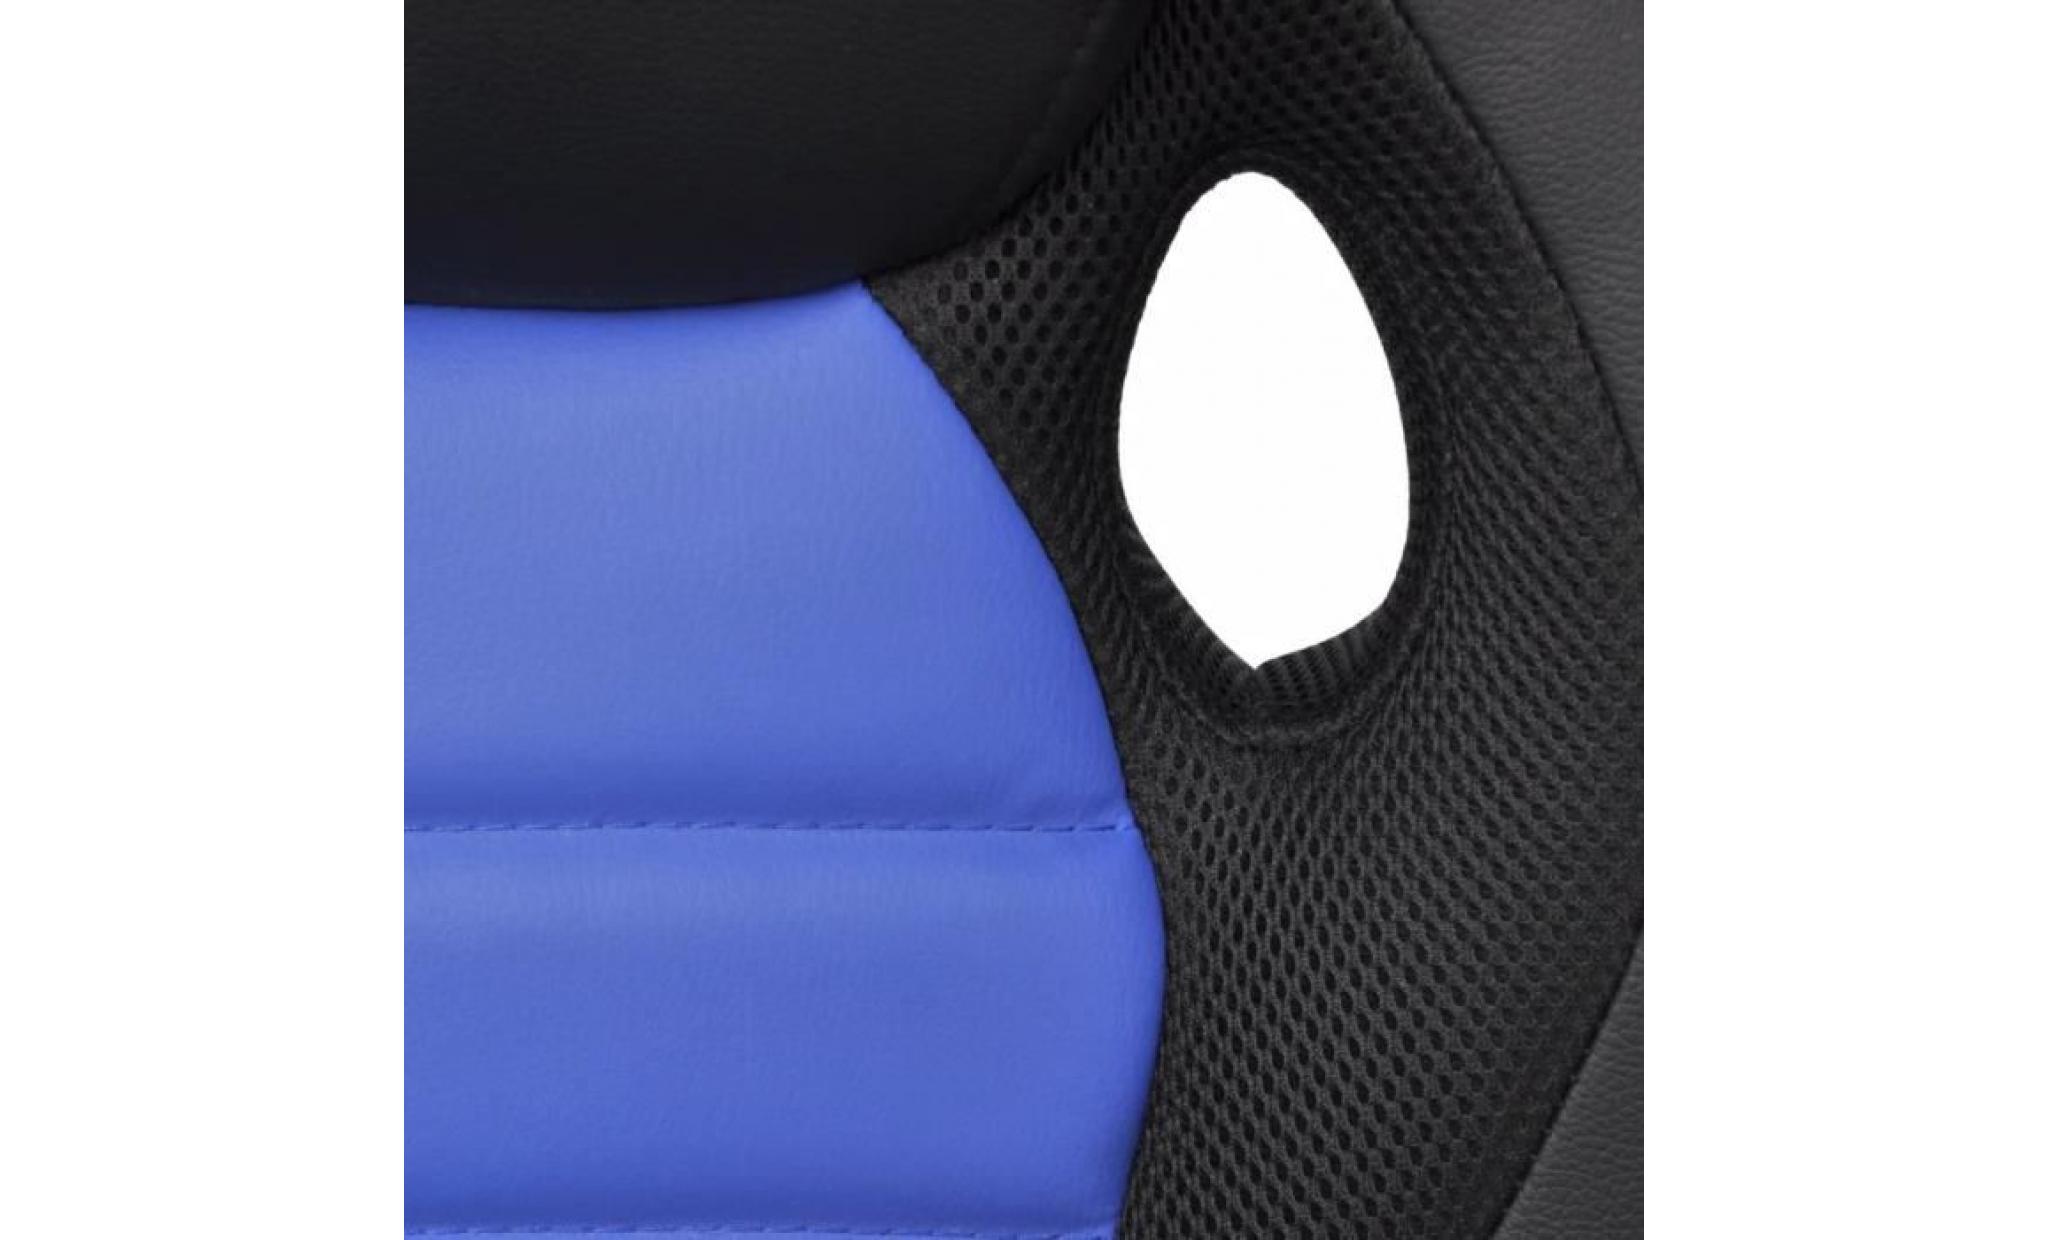 chaise de bureau gamer noir et bleu fauteuil en similicuir chromé directeur enfant adolescent jeux confortable pas cher